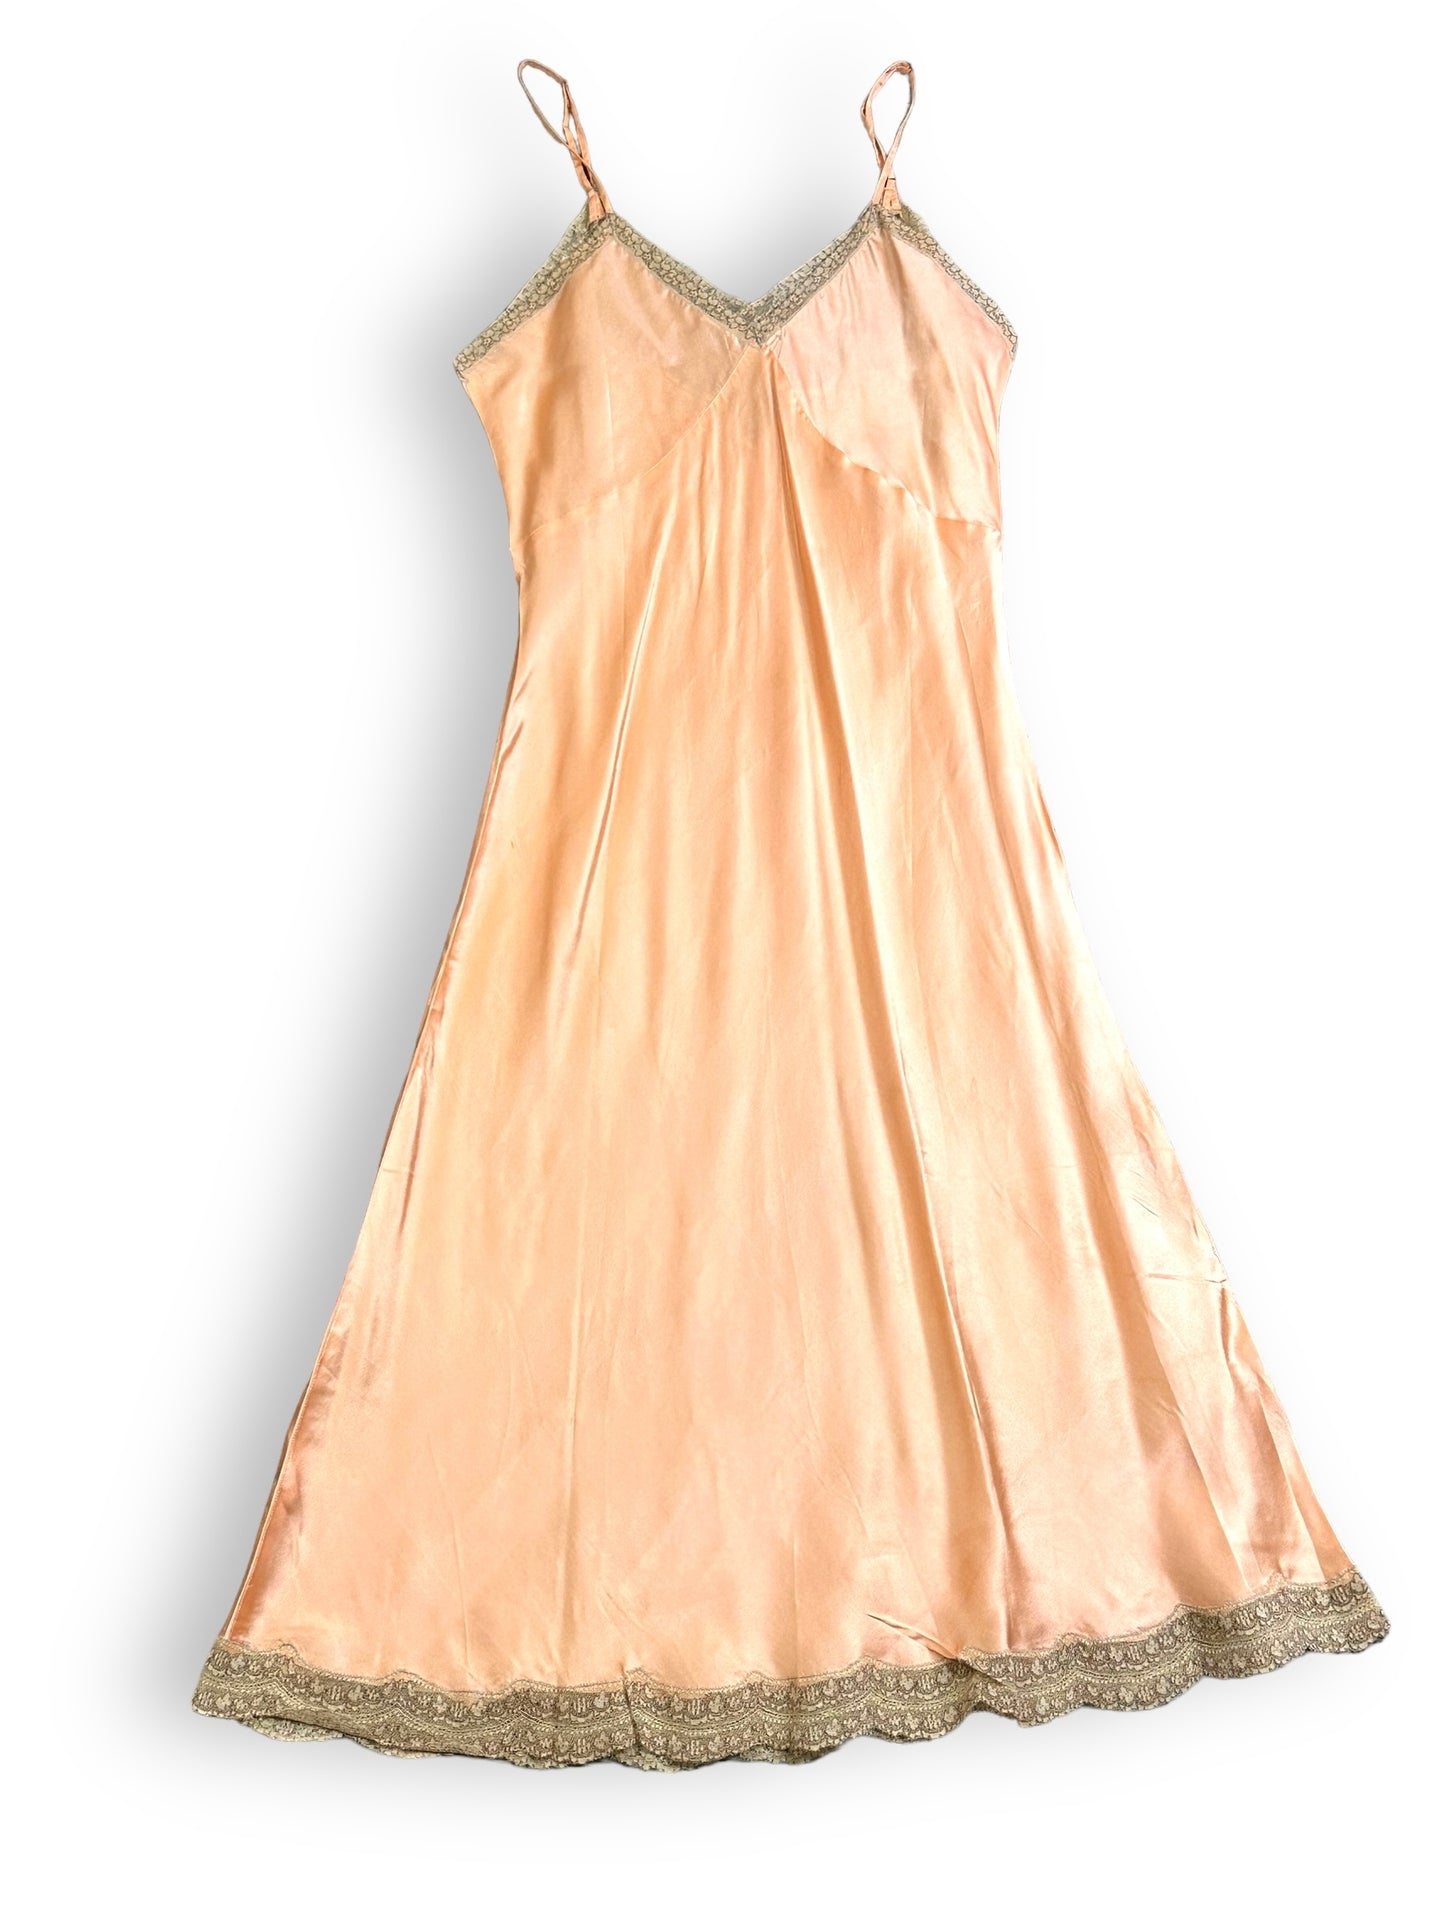 1930s / 1940s Satin Lezure Pale Pink + Lace Lingerie Slip